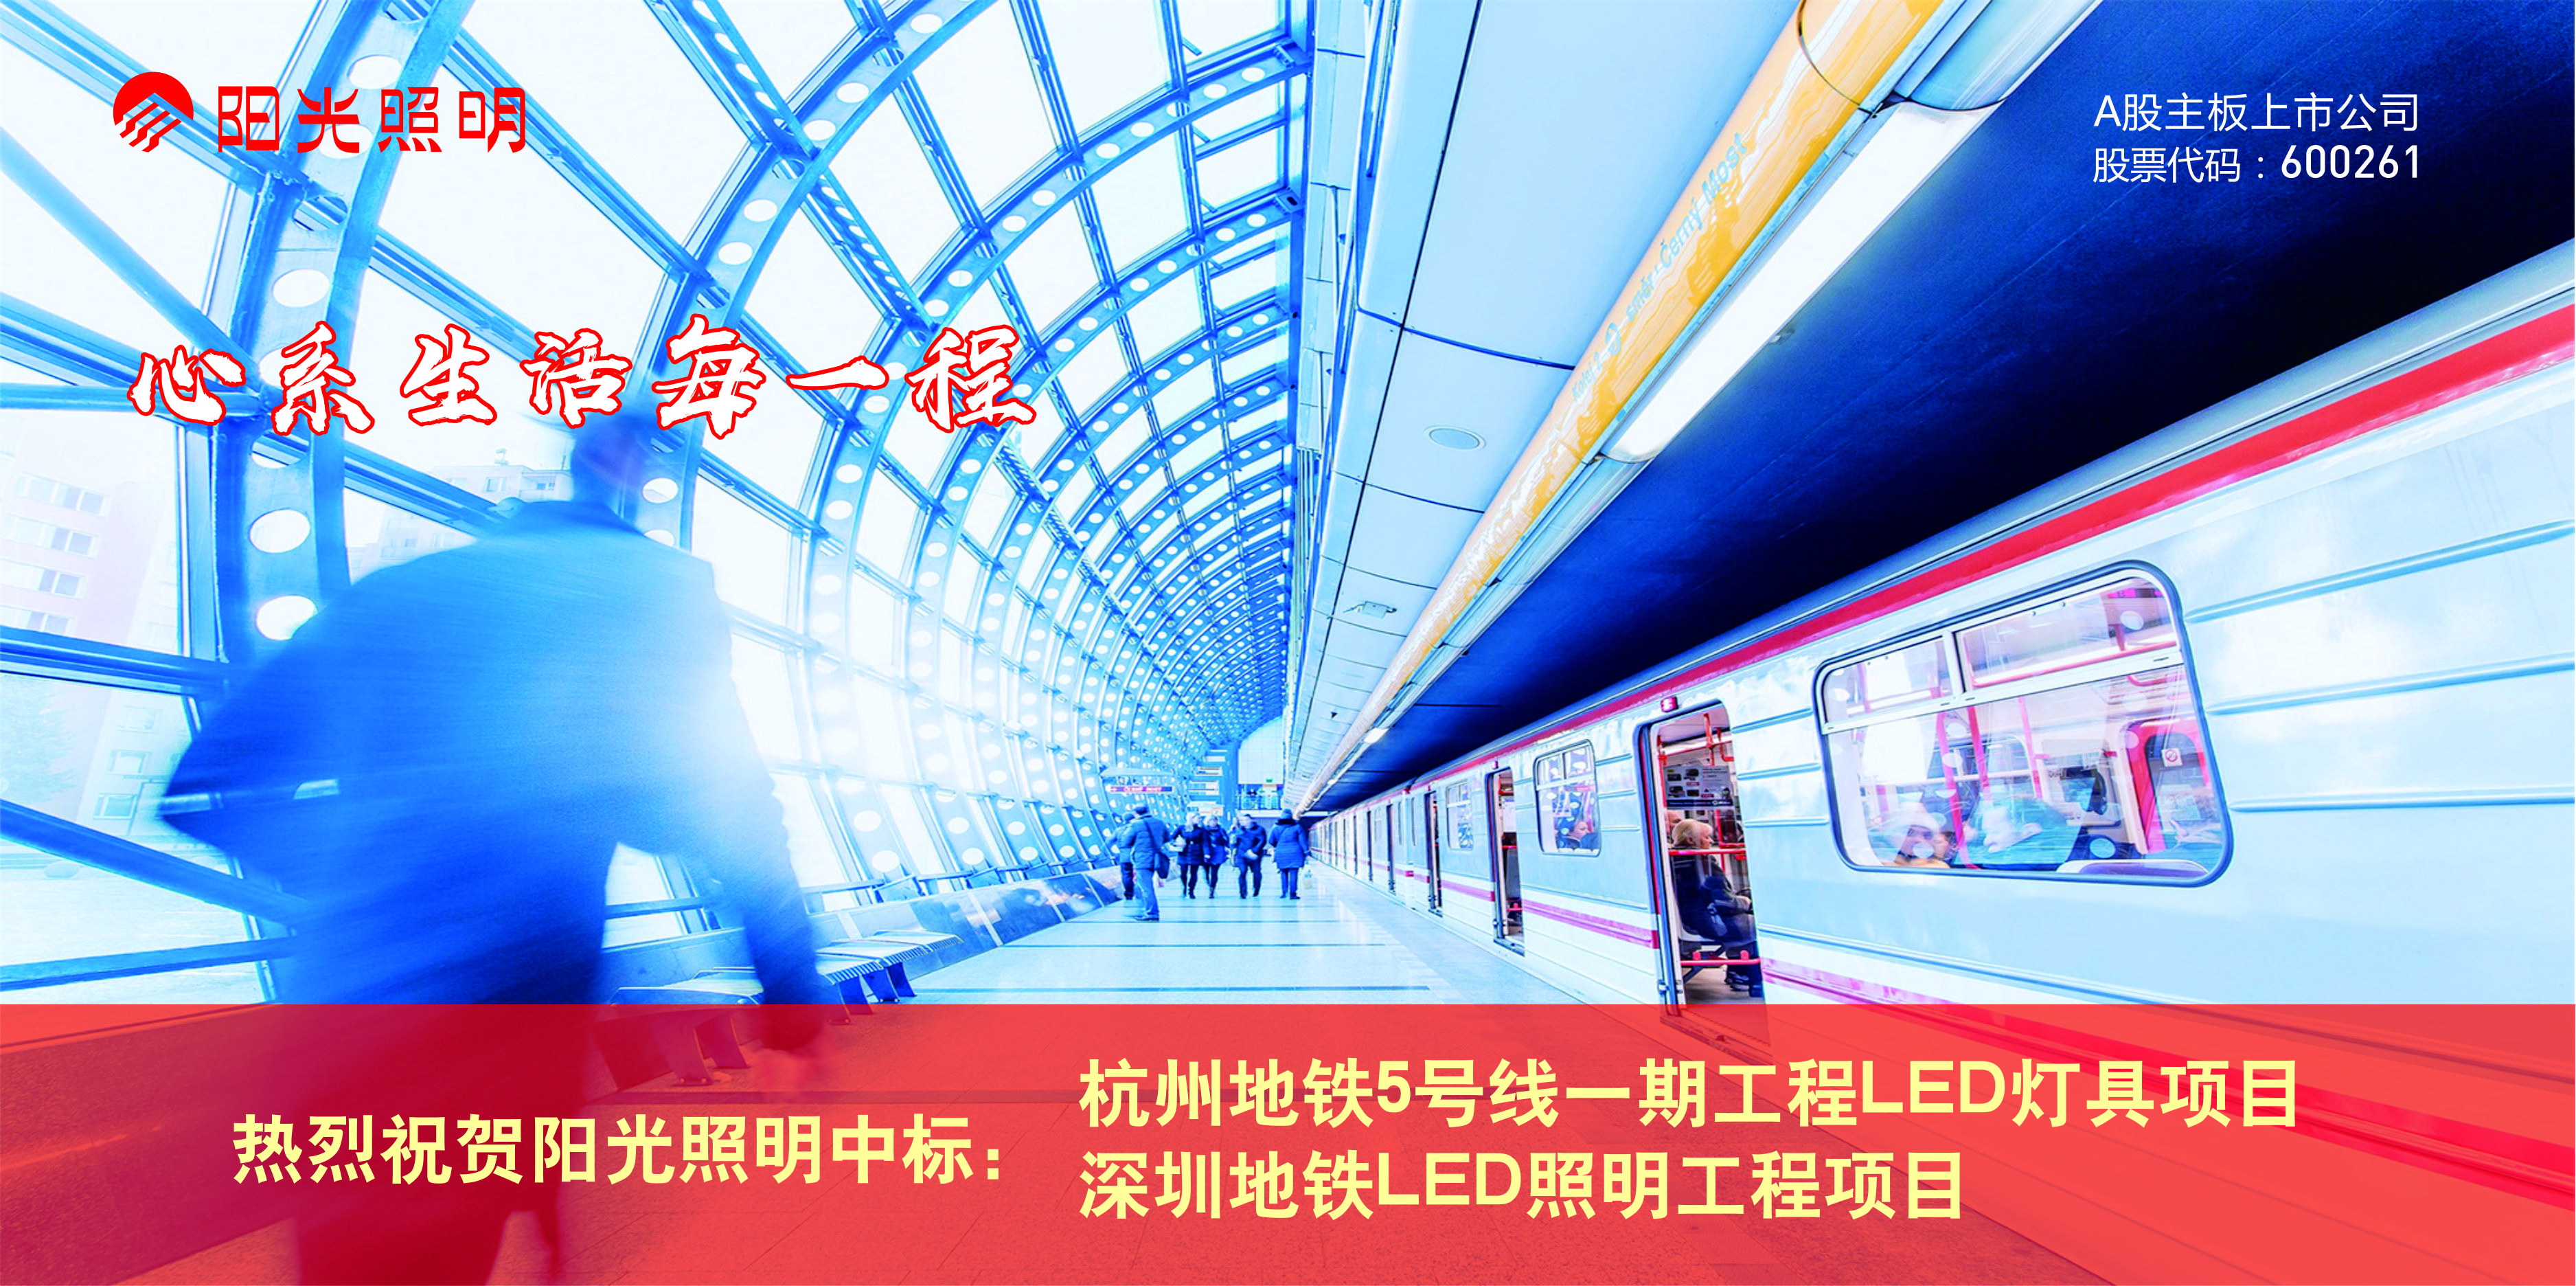 bat365在线平台(中文)官方网站近期中标杭州、深圳二个城市地铁LED照明项目 合同金额4779万元